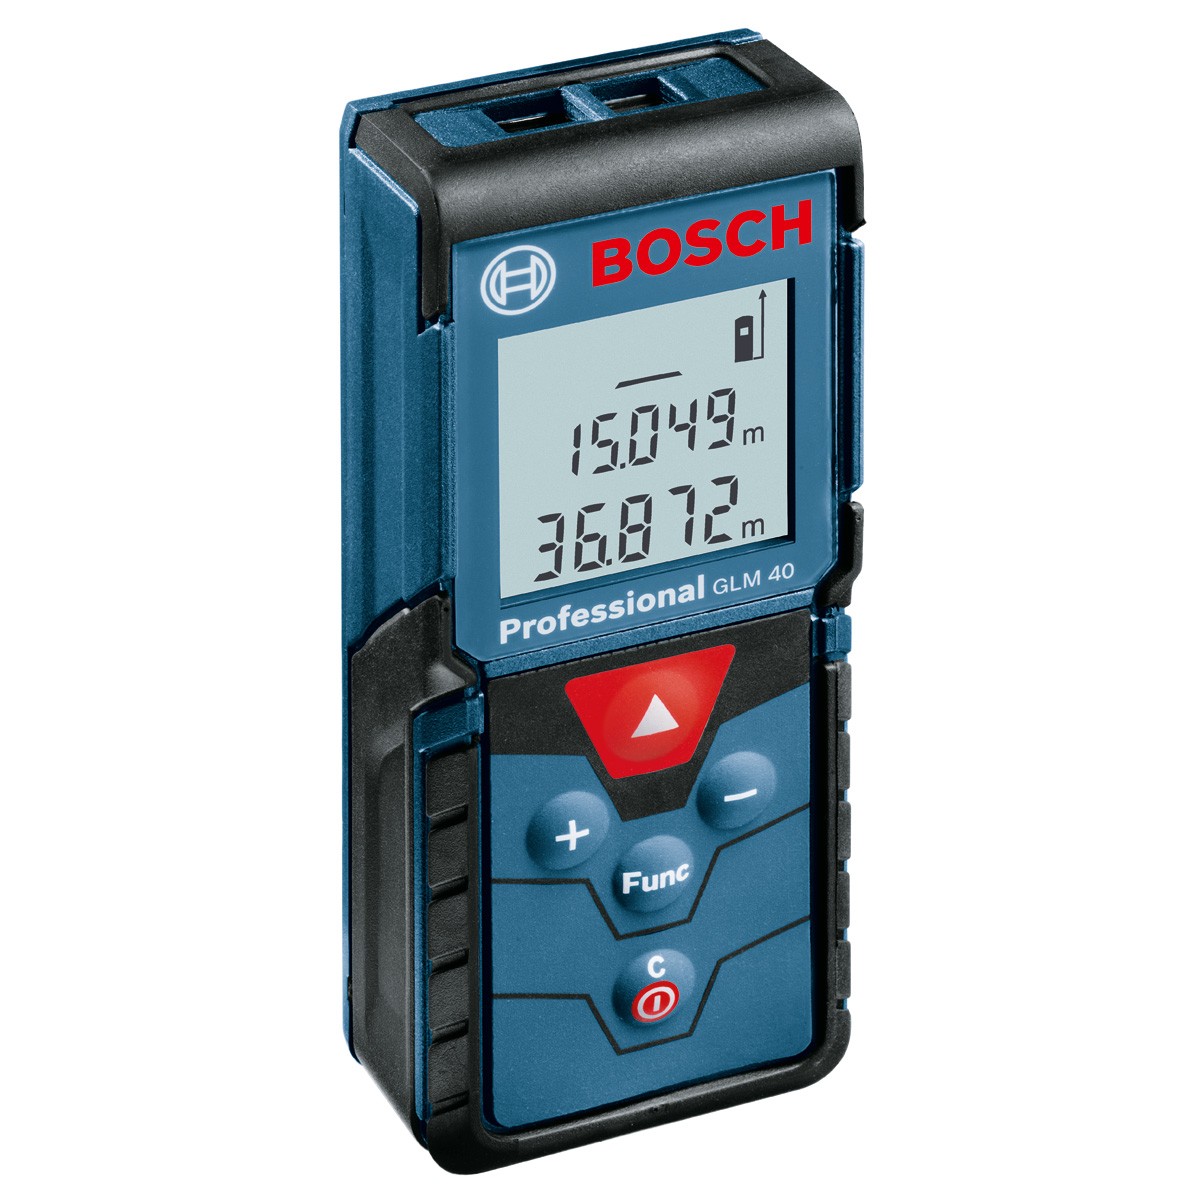 Telemetru cu laser Bosch Professional GLM 40, 635 nm, Domeniu de măsurare 0.15 – 120 m, Deconectare automată, 0601072900